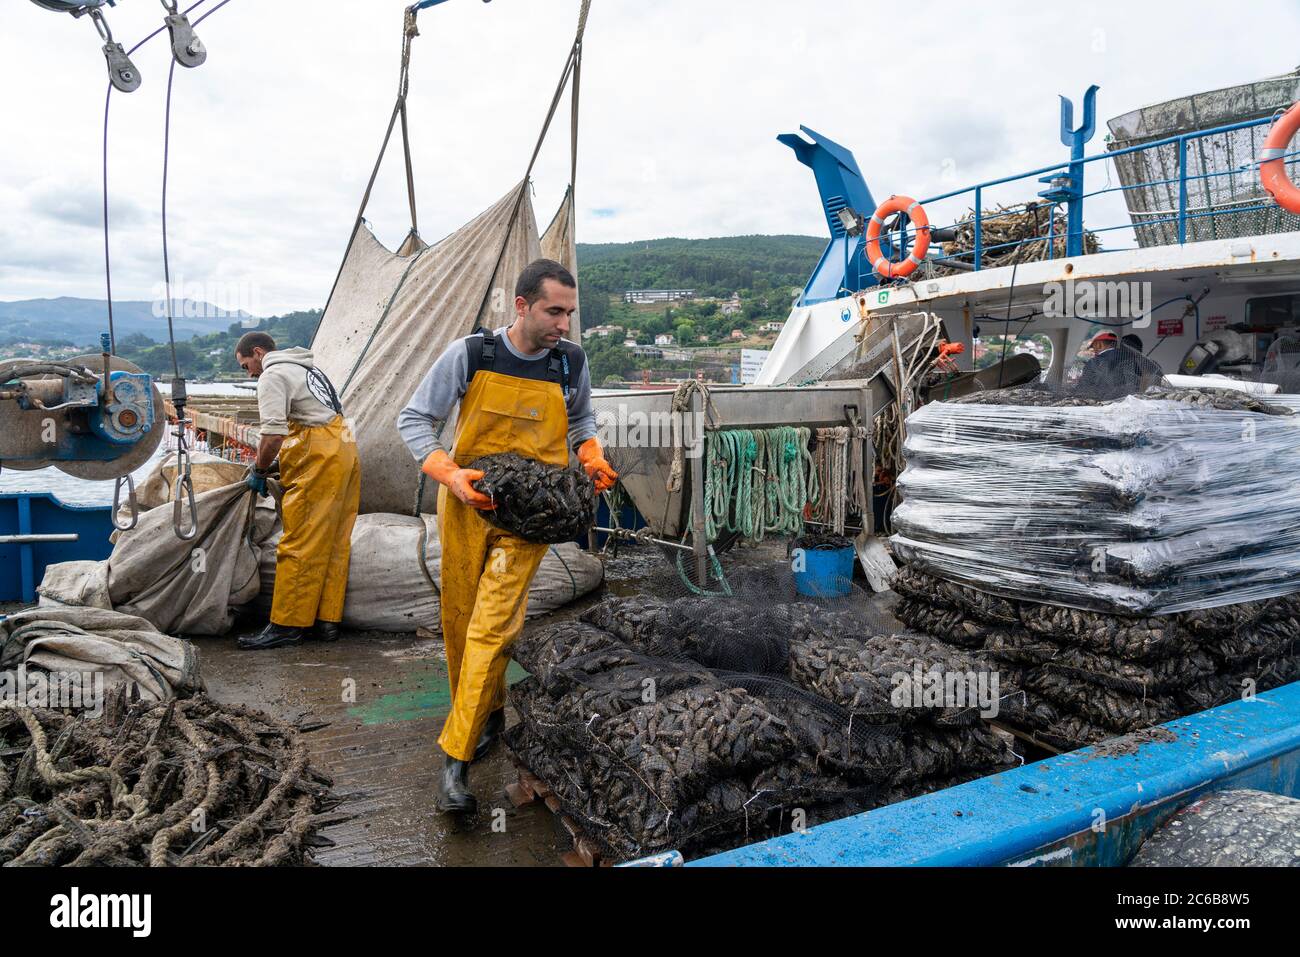 Pescatori che lavorano su una barca ottenere cozze da una batea zattera a Redondela, Galizia, Spagna, Europa Foto Stock